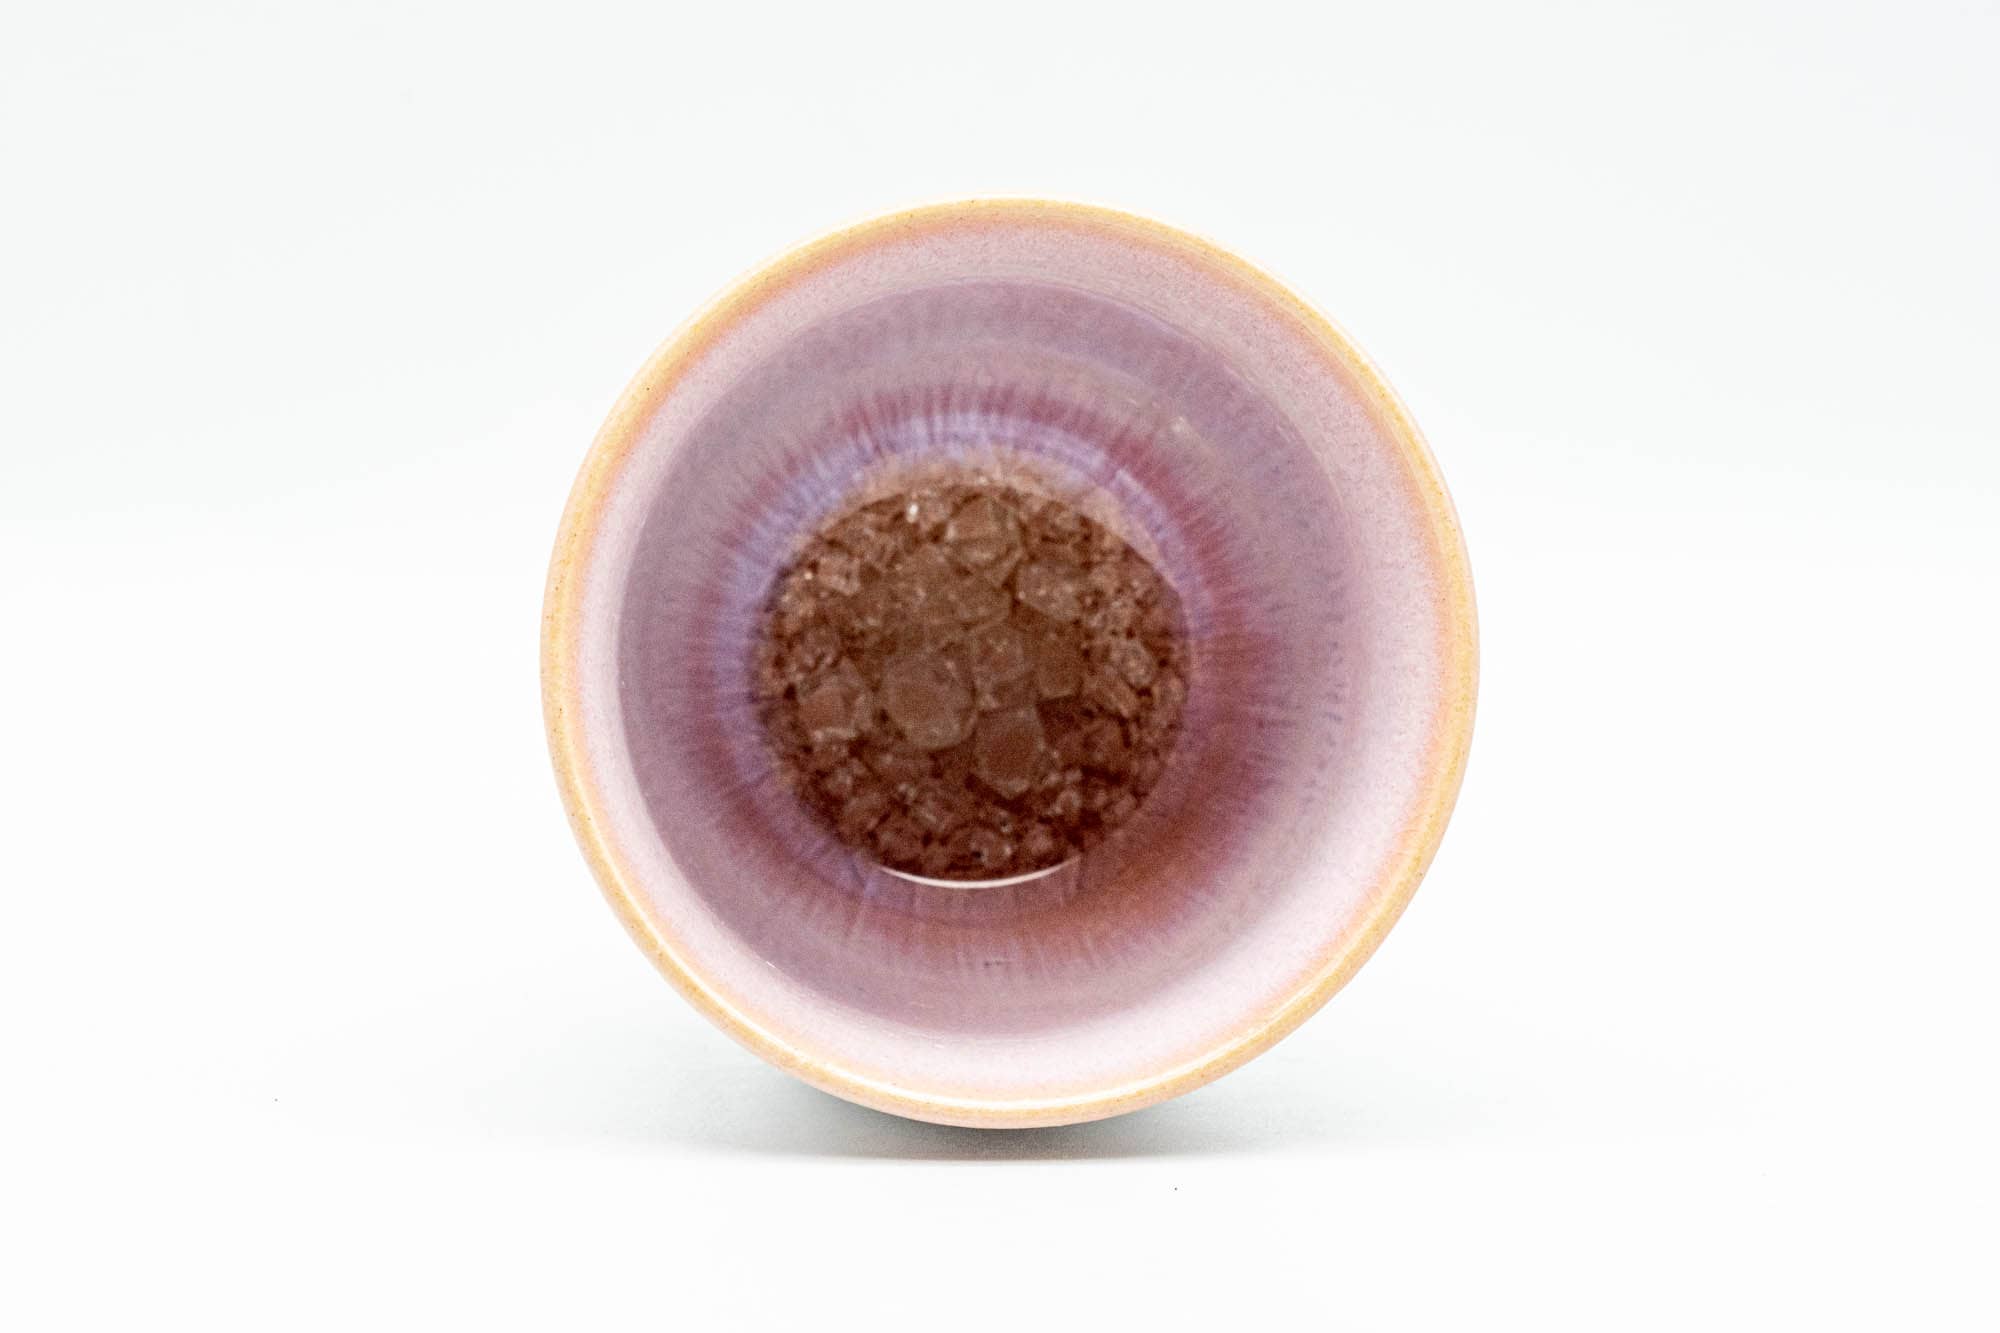 Japanese Teacup - Pink Cerulean Crazed Interior Glaze Yunomi - 115ml